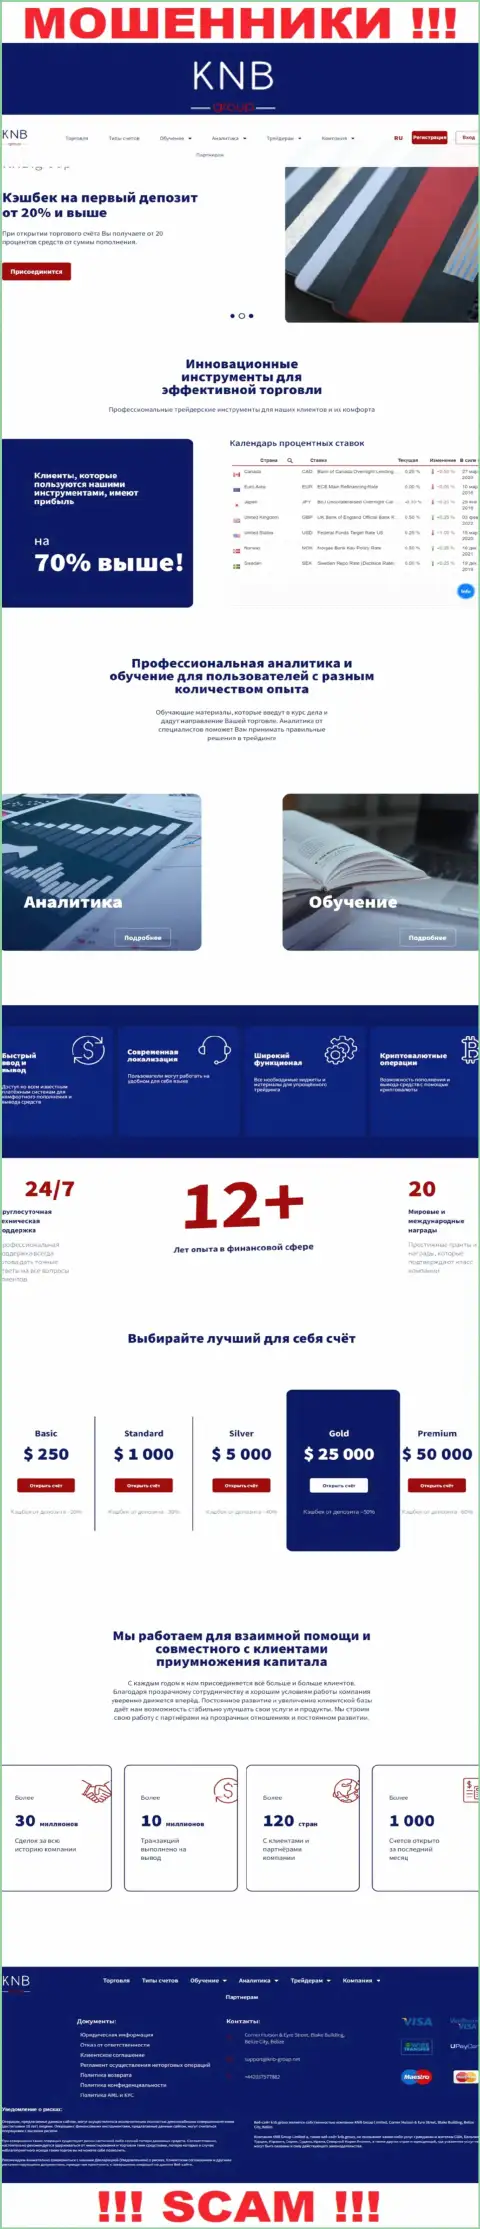 Обзор официального веб-портала мошенников КНБ Групп